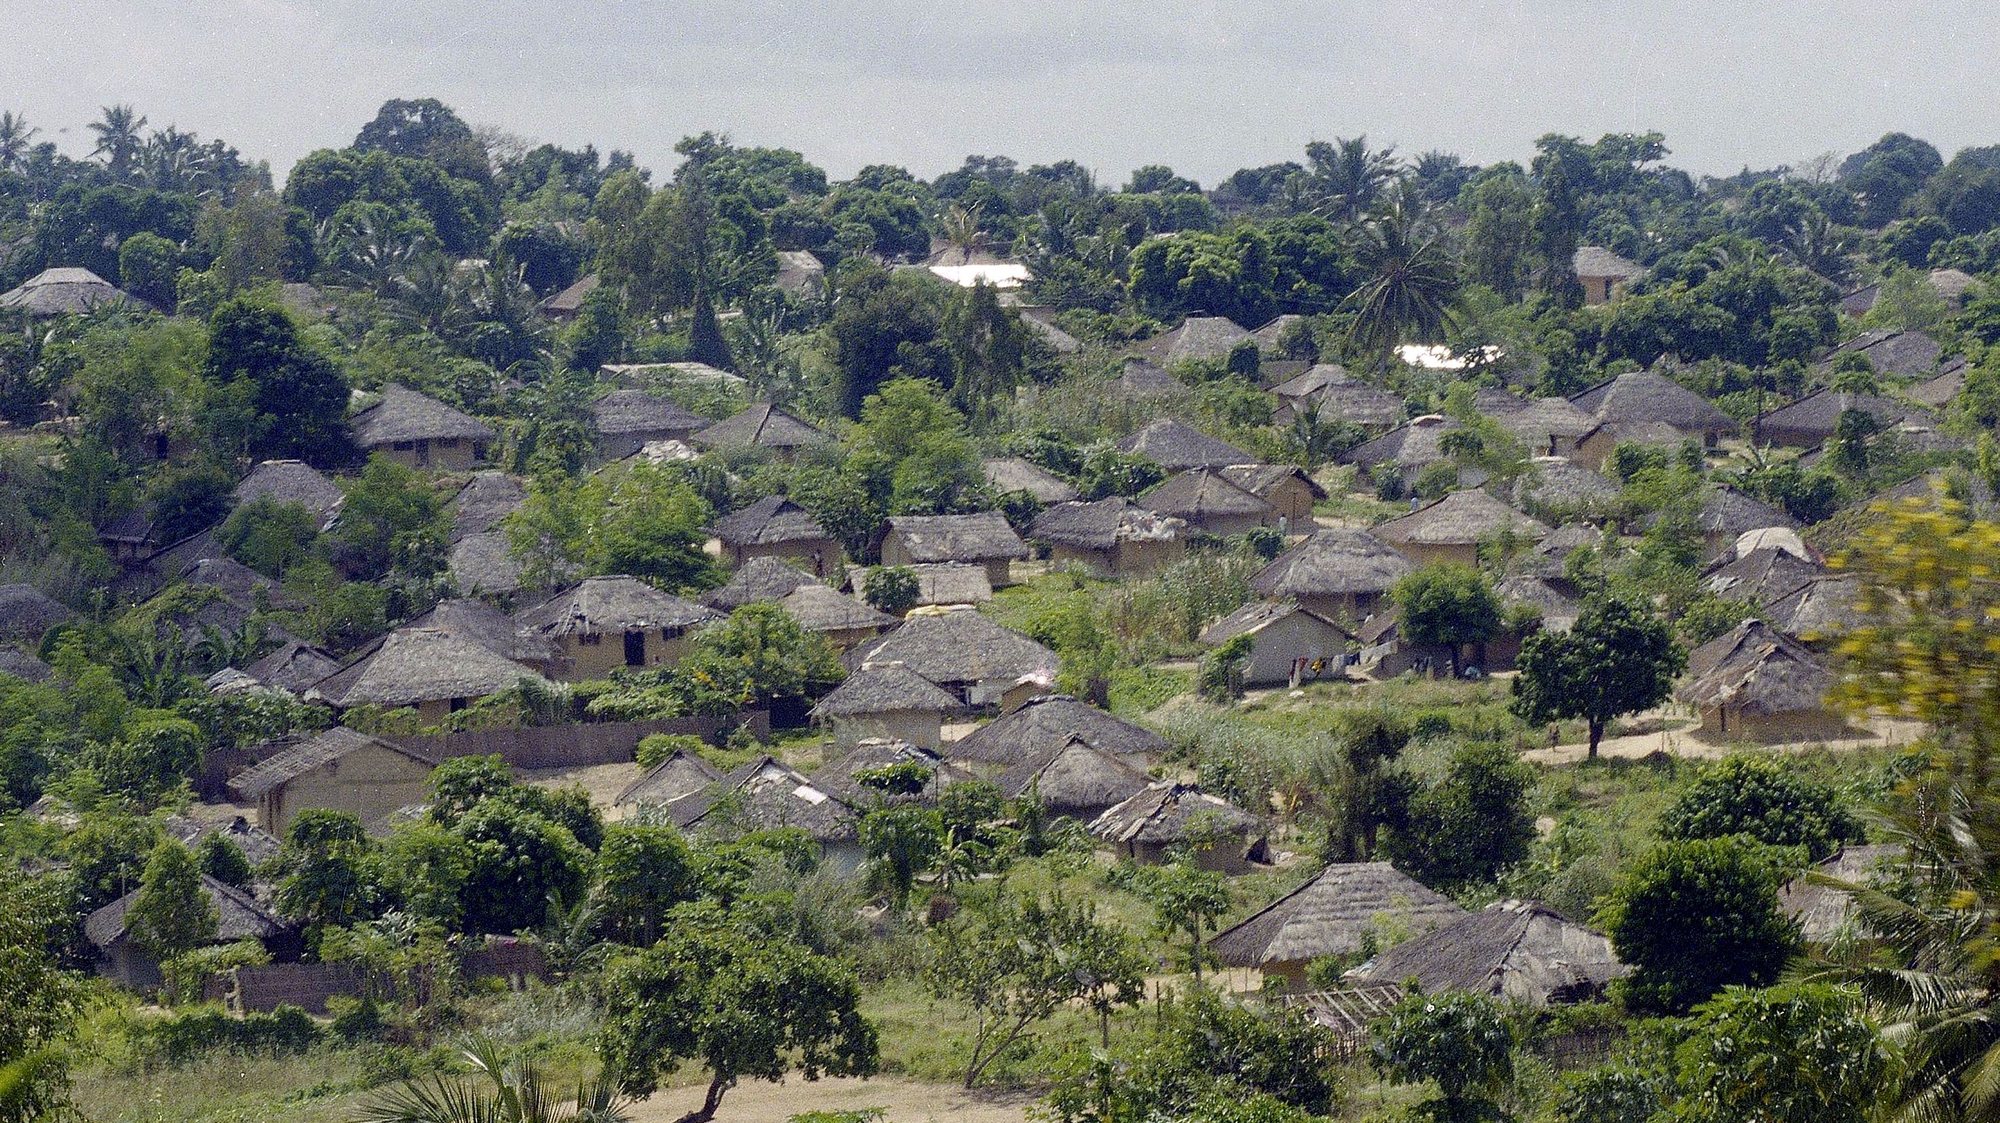 Aldeia moçambicana na Provincia de Nampula, Moçambique a 1 de maio de 1997.

António Cotrim / Lusa